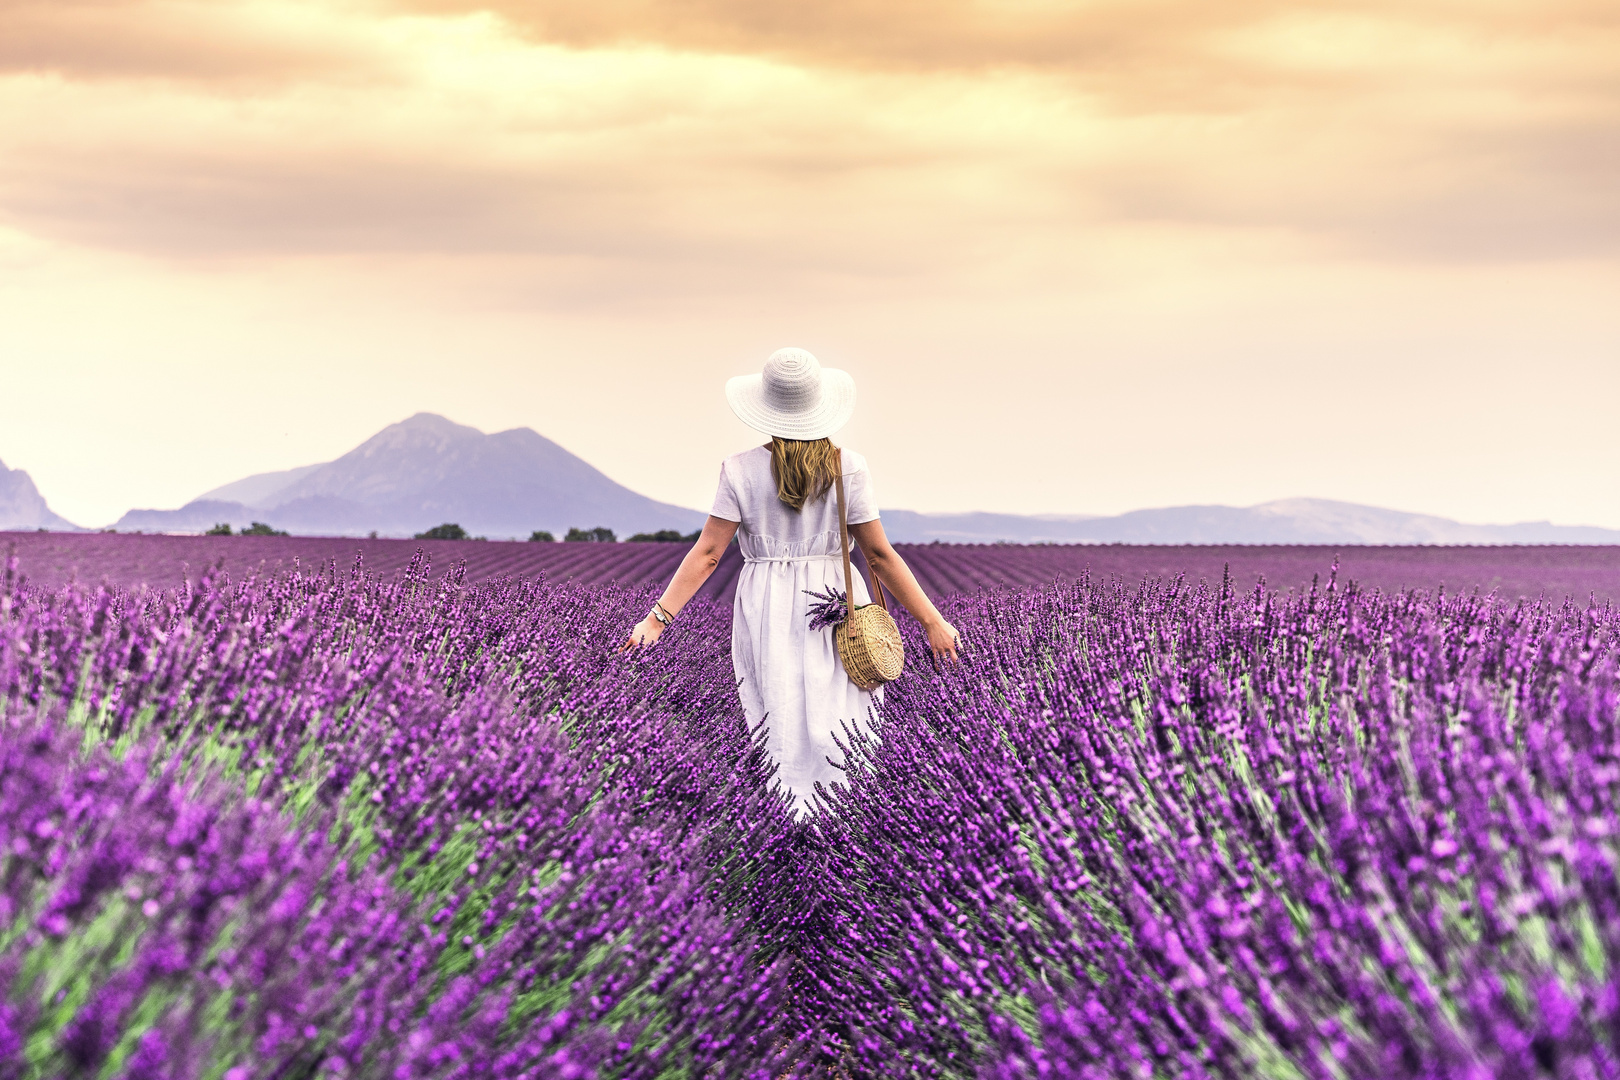 Im Lavendelfeld